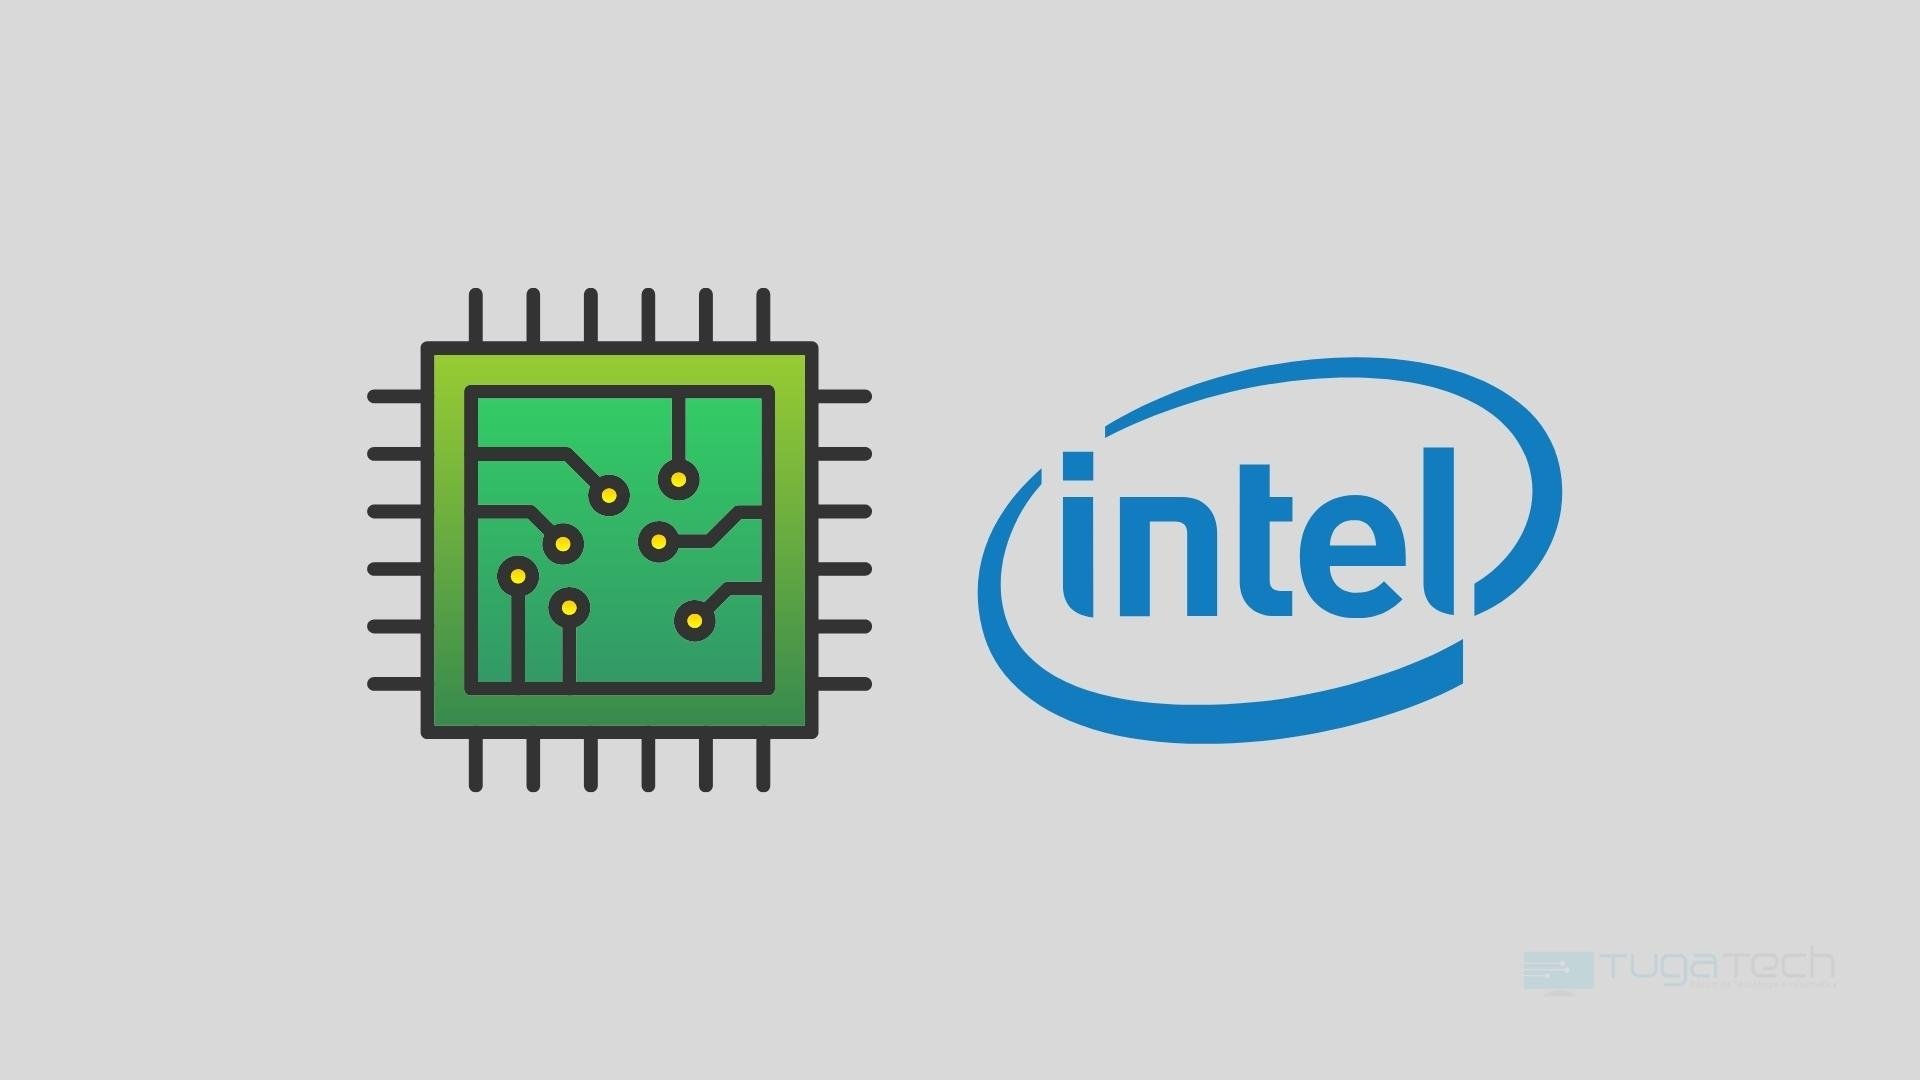 Intel processador com logo